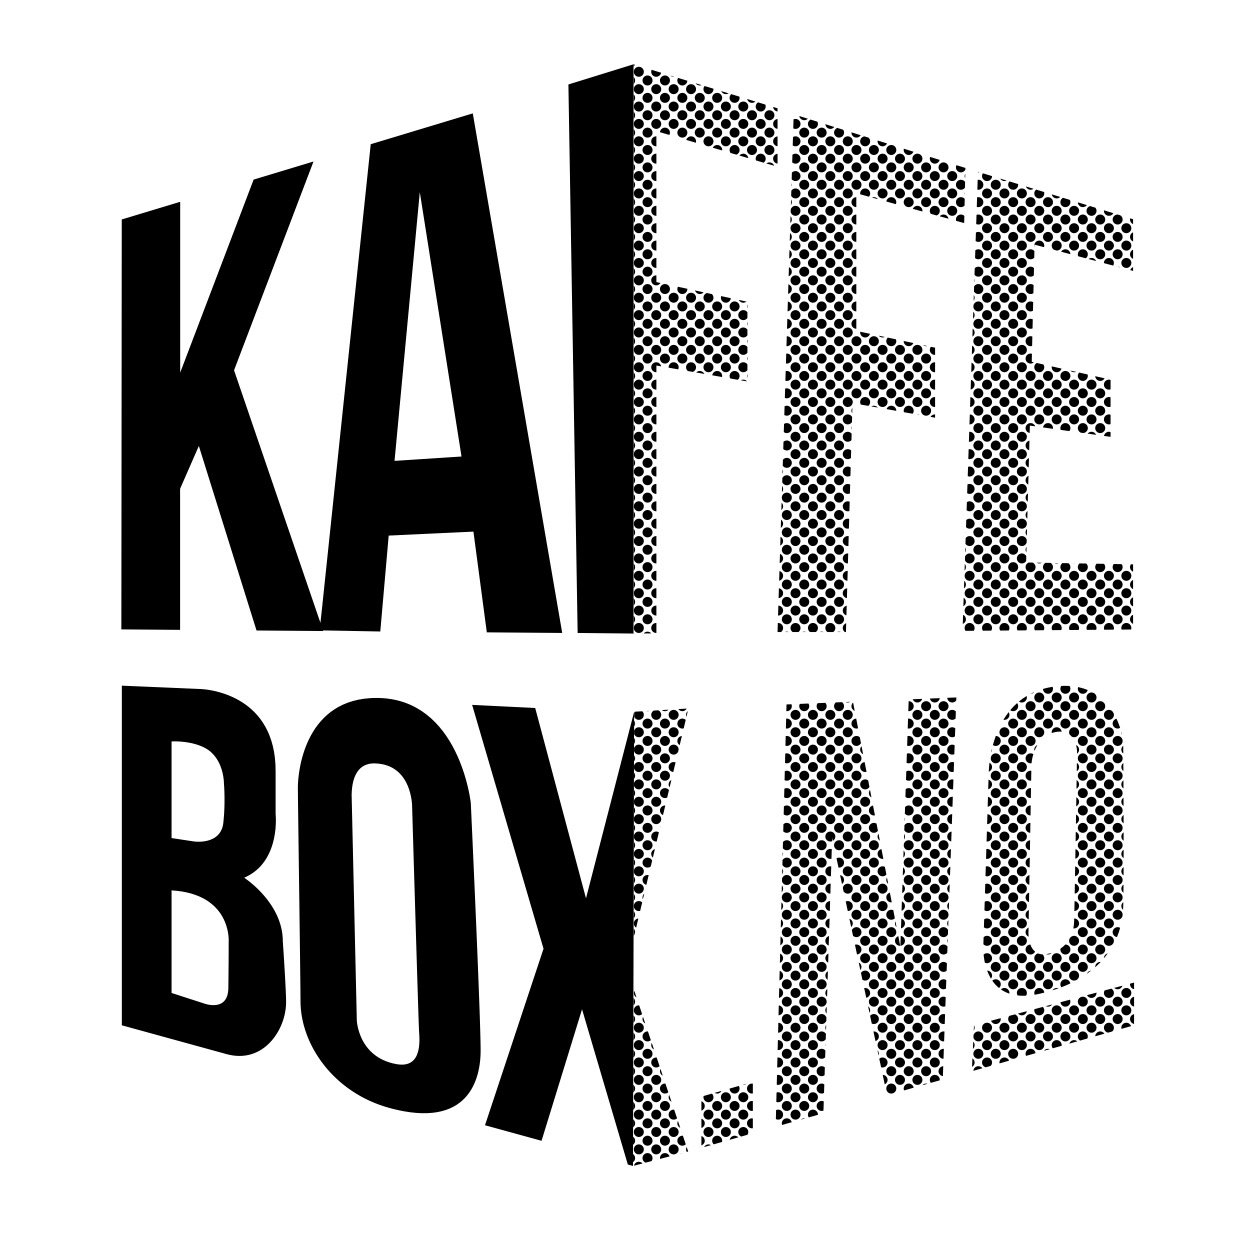 Kaffebox_Logo_Halftone_Large_Black.jpg